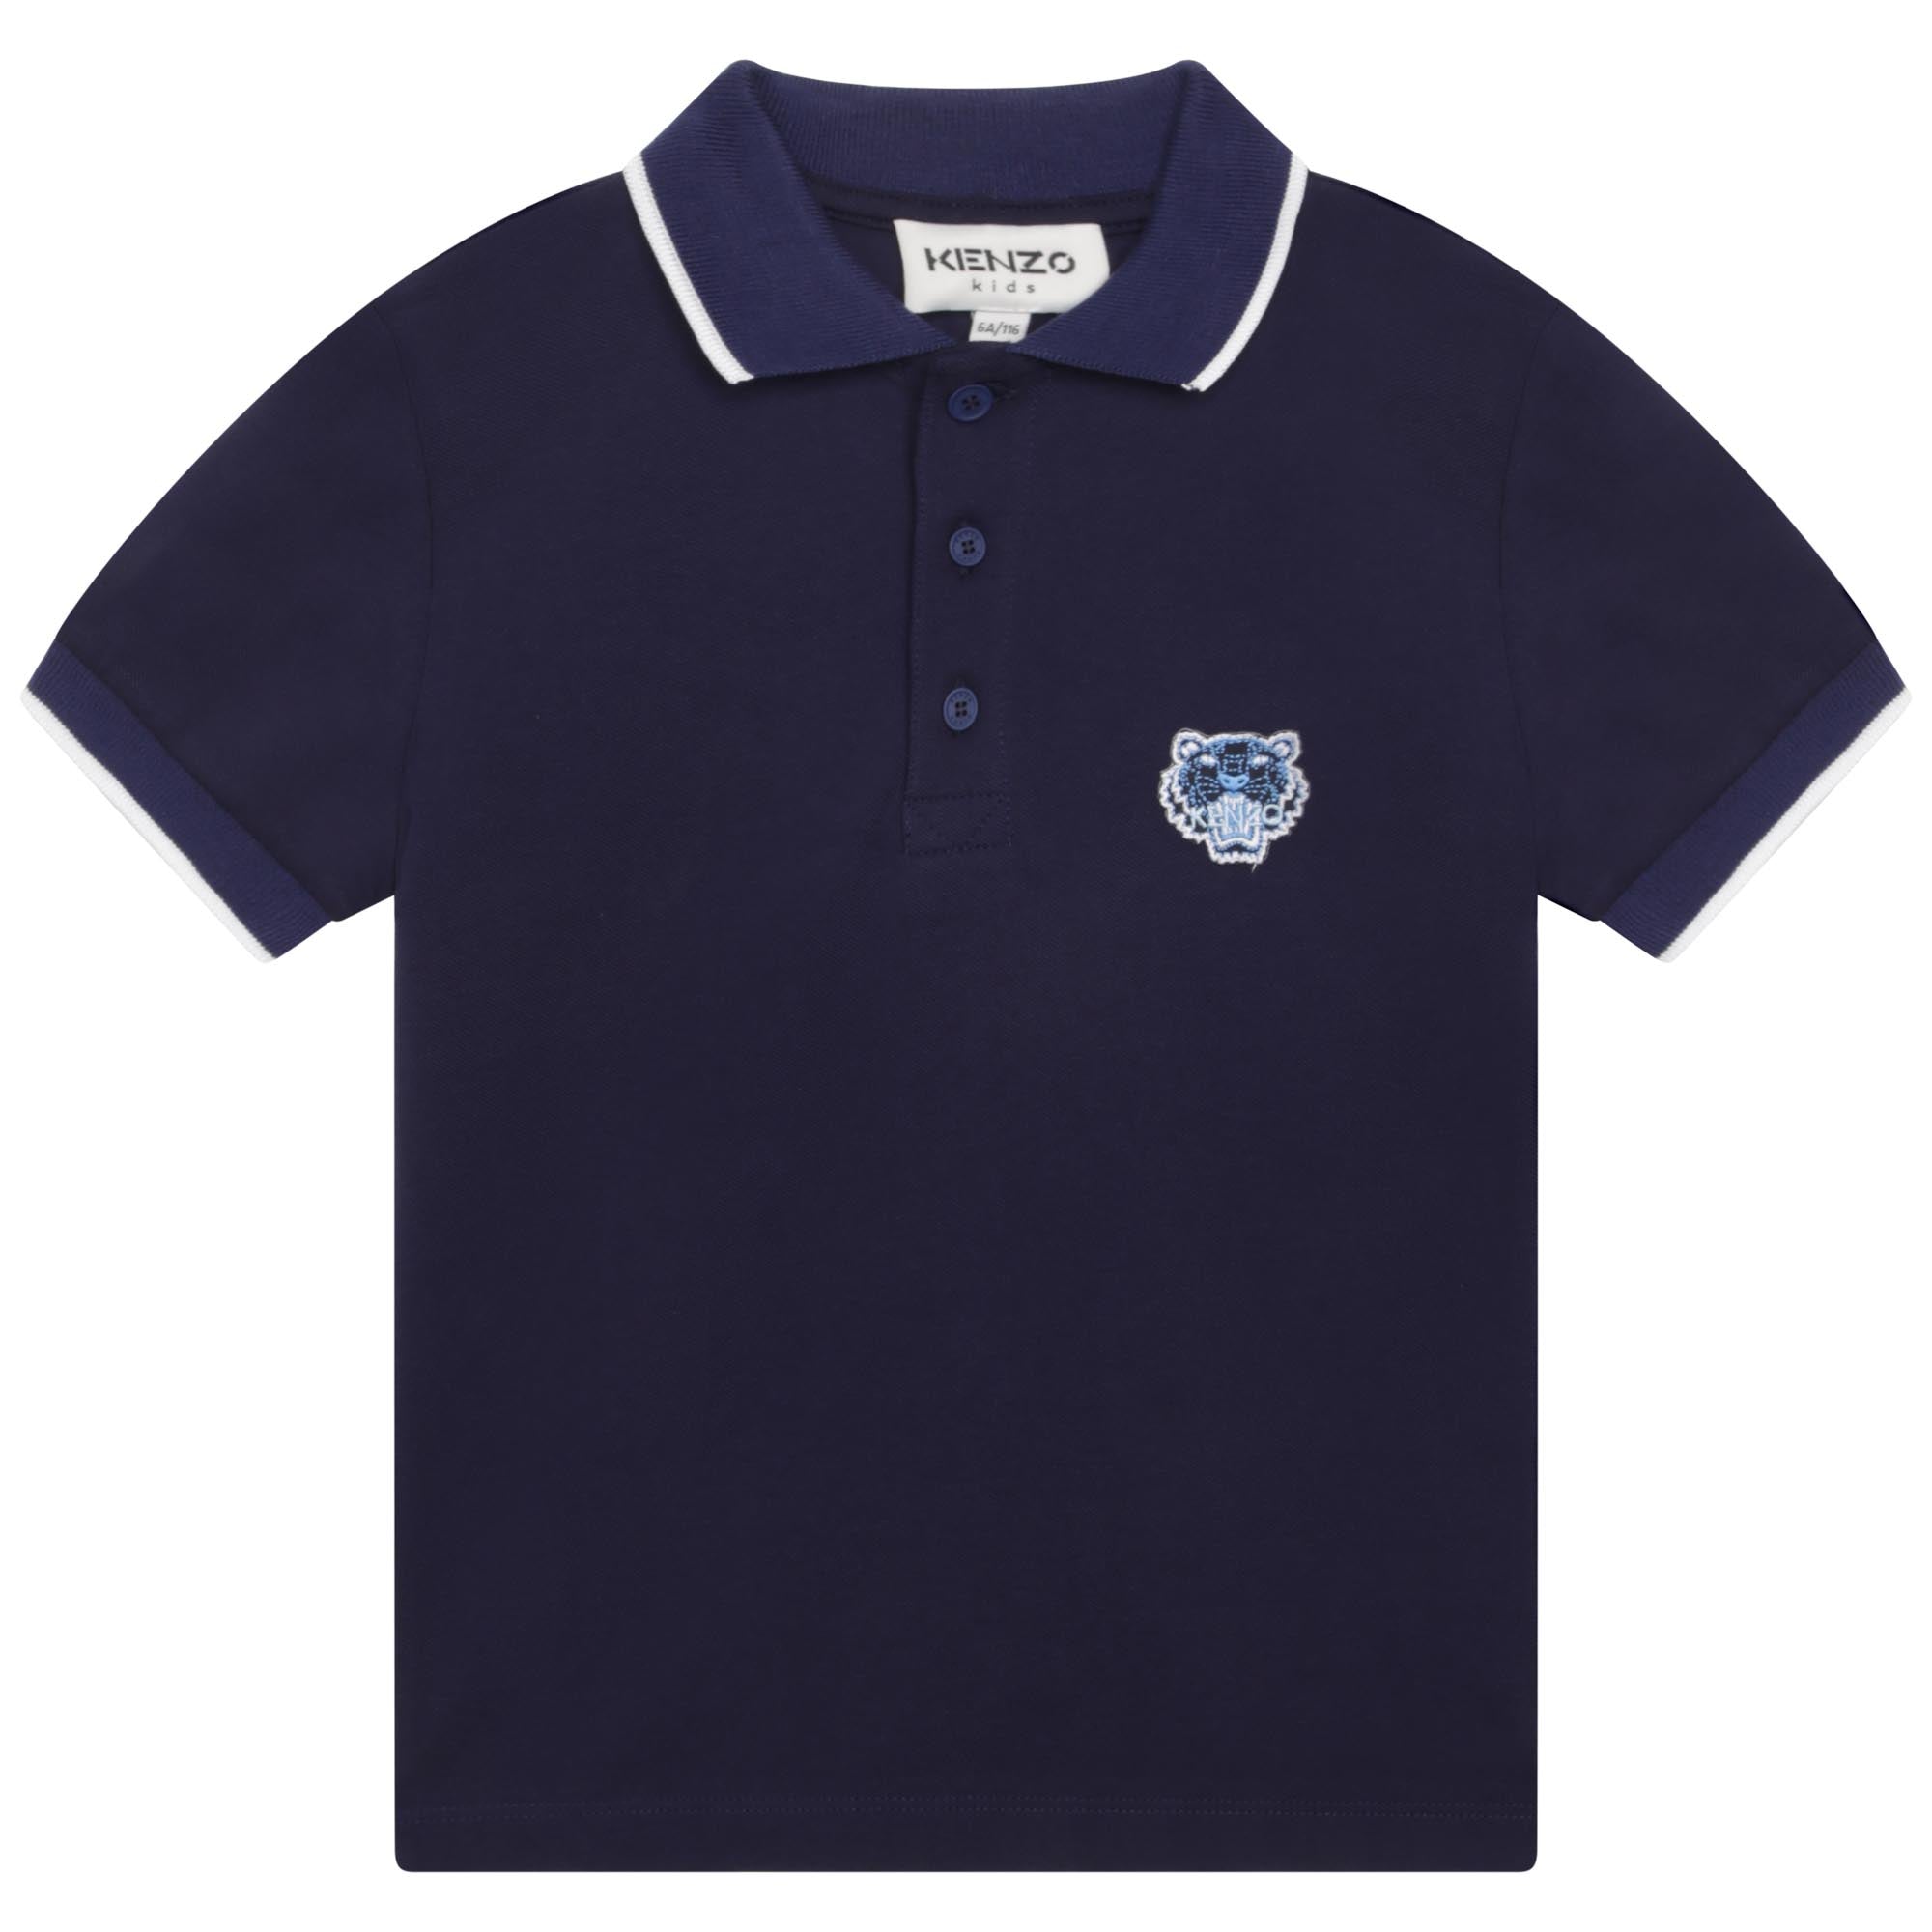 Boys Navy Tiger Polo Shirt